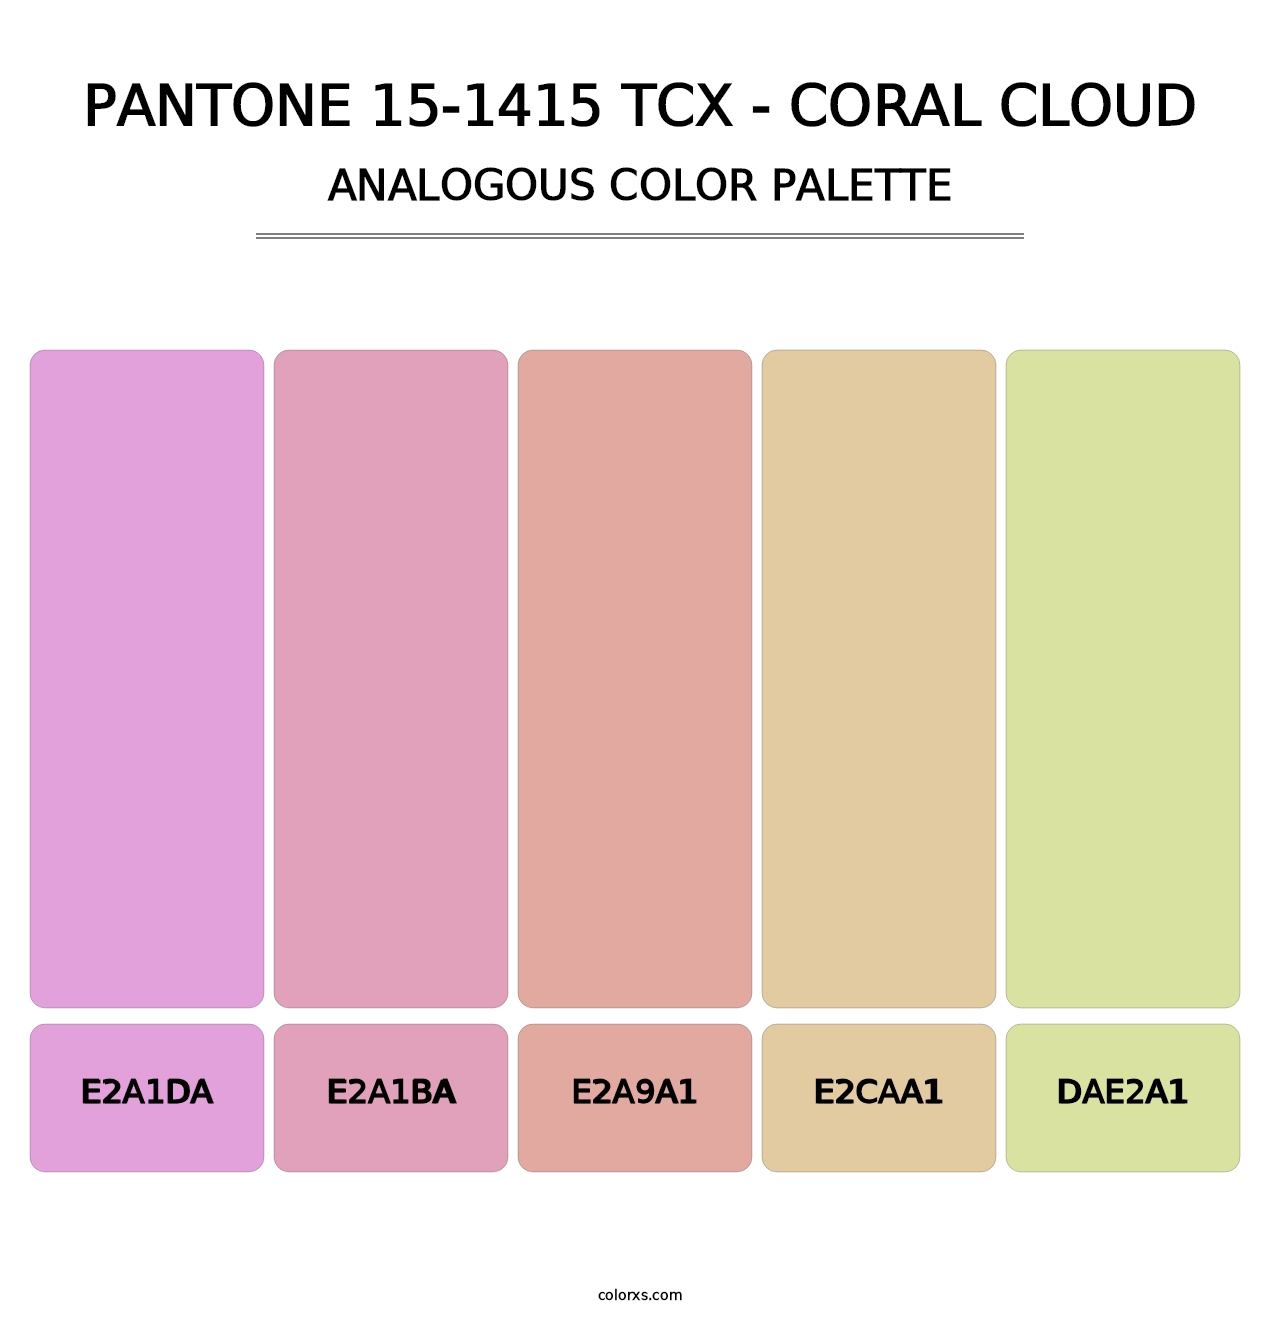 PANTONE 15-1415 TCX - Coral Cloud - Analogous Color Palette